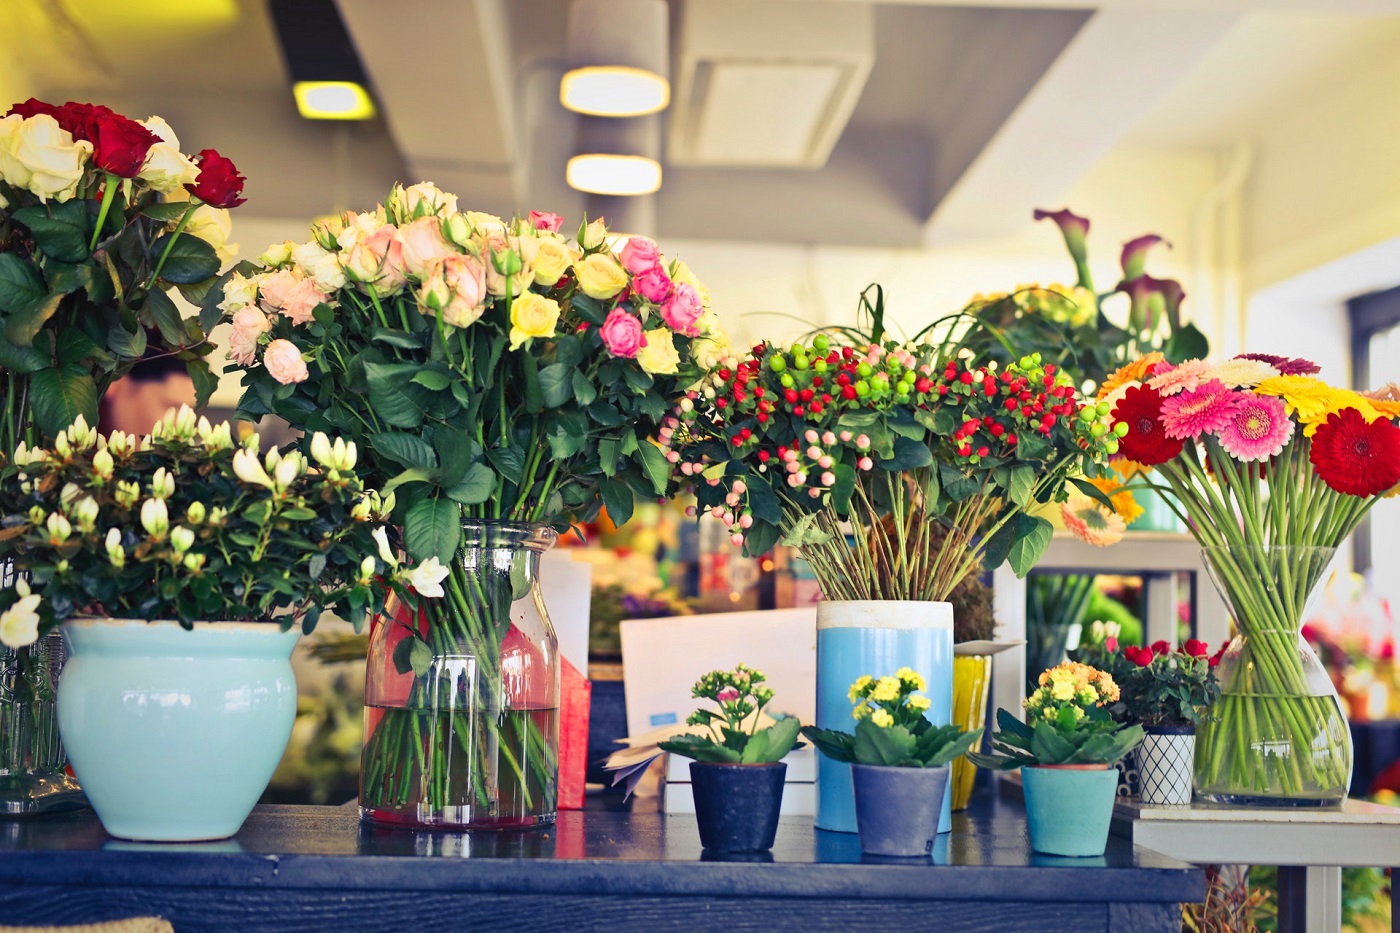 florist shop - best flower arrangement tools